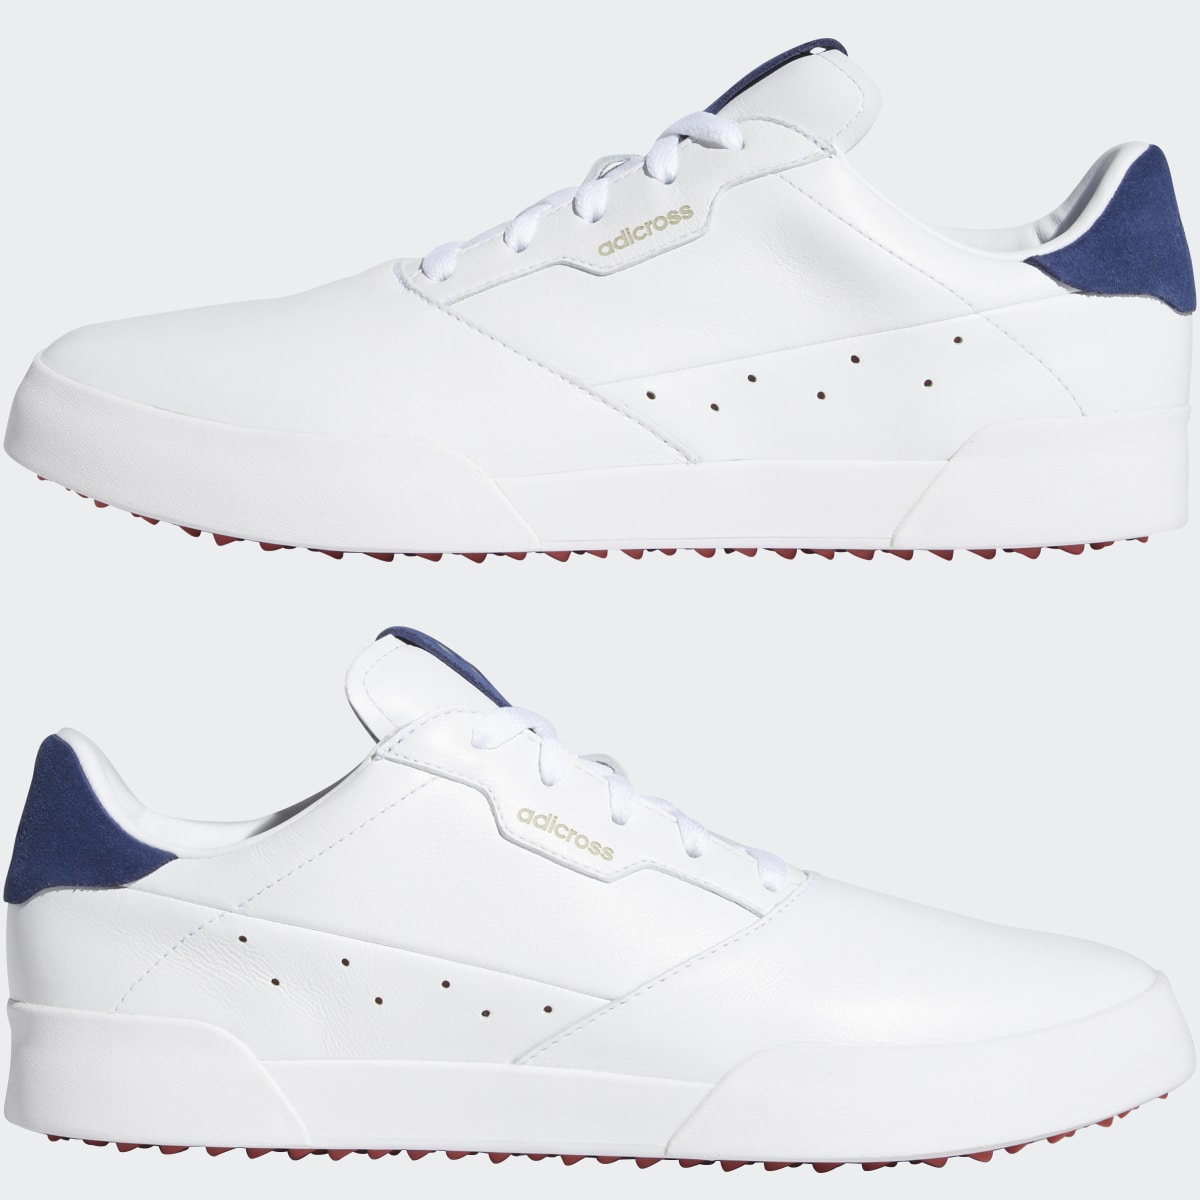 Adidas Scarpe da golf adicross Retro. 11